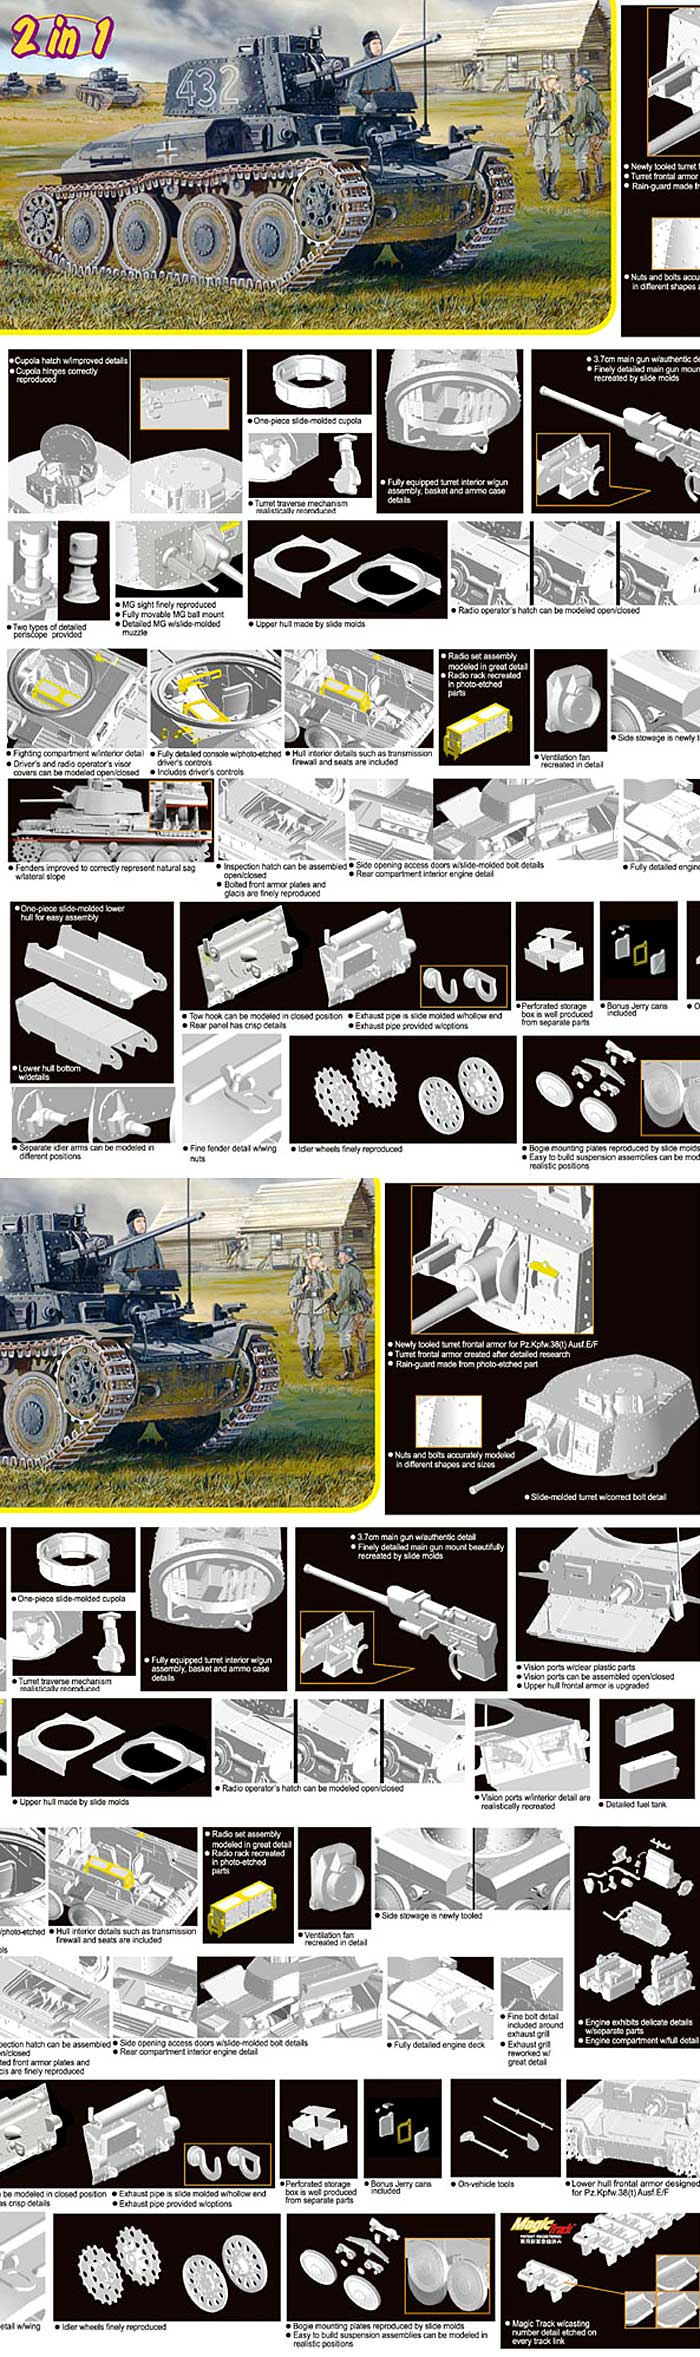 38(t)戦車 E/F型 (Pz.Kpfw.38t Ausf.E/F) プラモデル (ドラゴン 1/35 '39-'45 Series No.6434) 商品画像_2